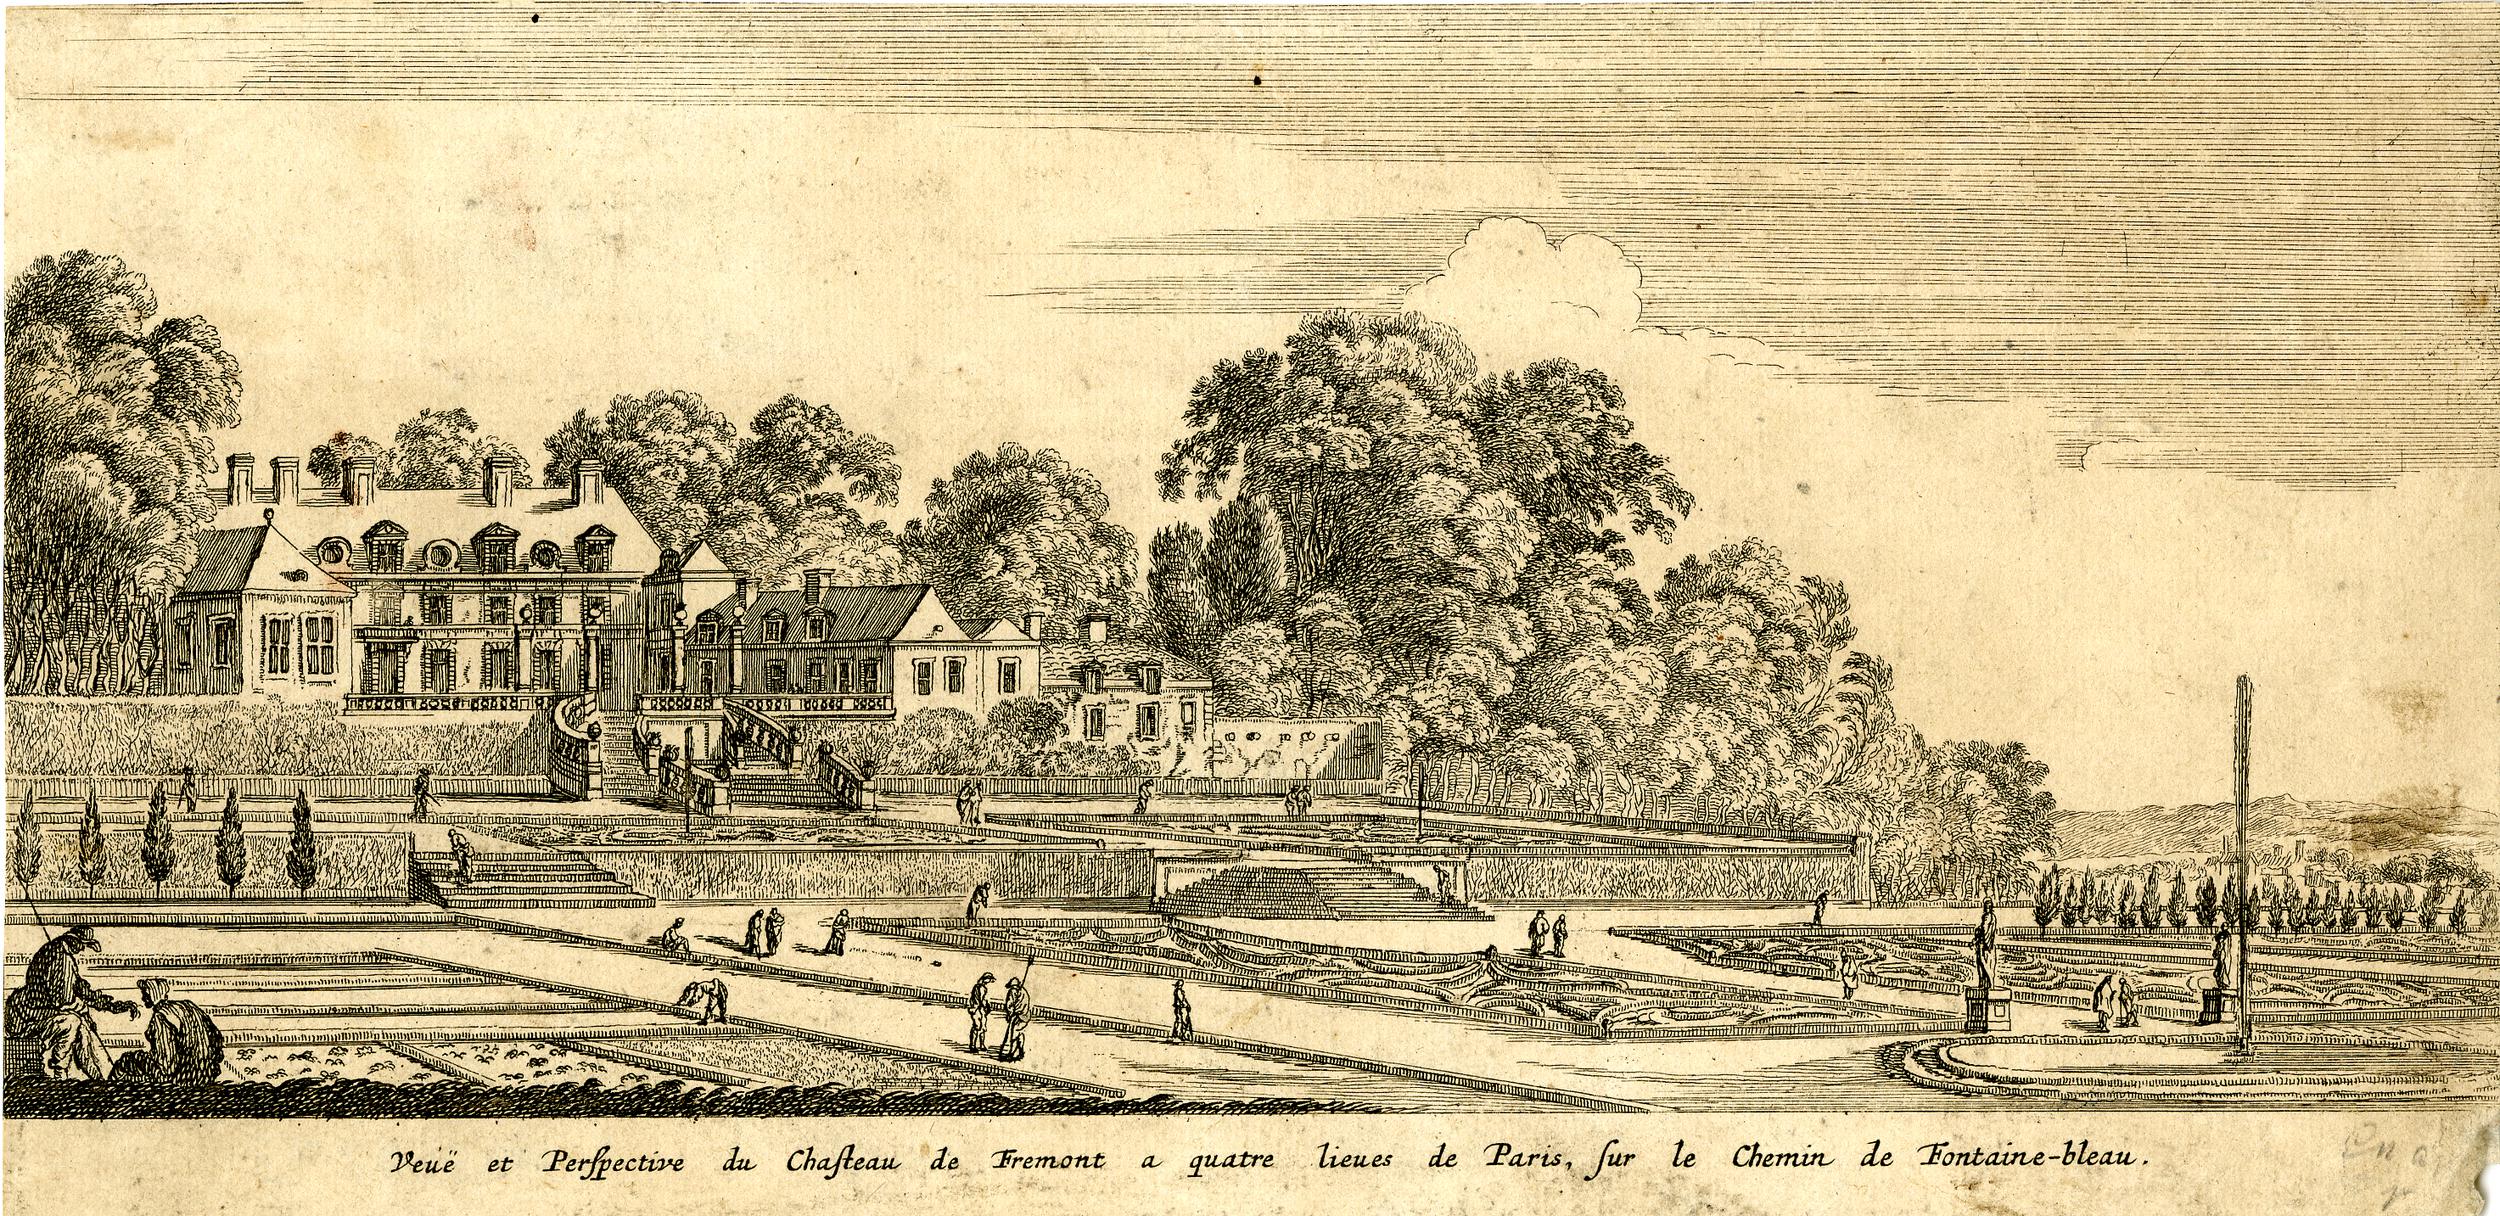 Israël Silvestre : Veüe et Perspective du Chasteau de Fremont a quatre lieues de Paris sur le chemin de Fontainebleau.